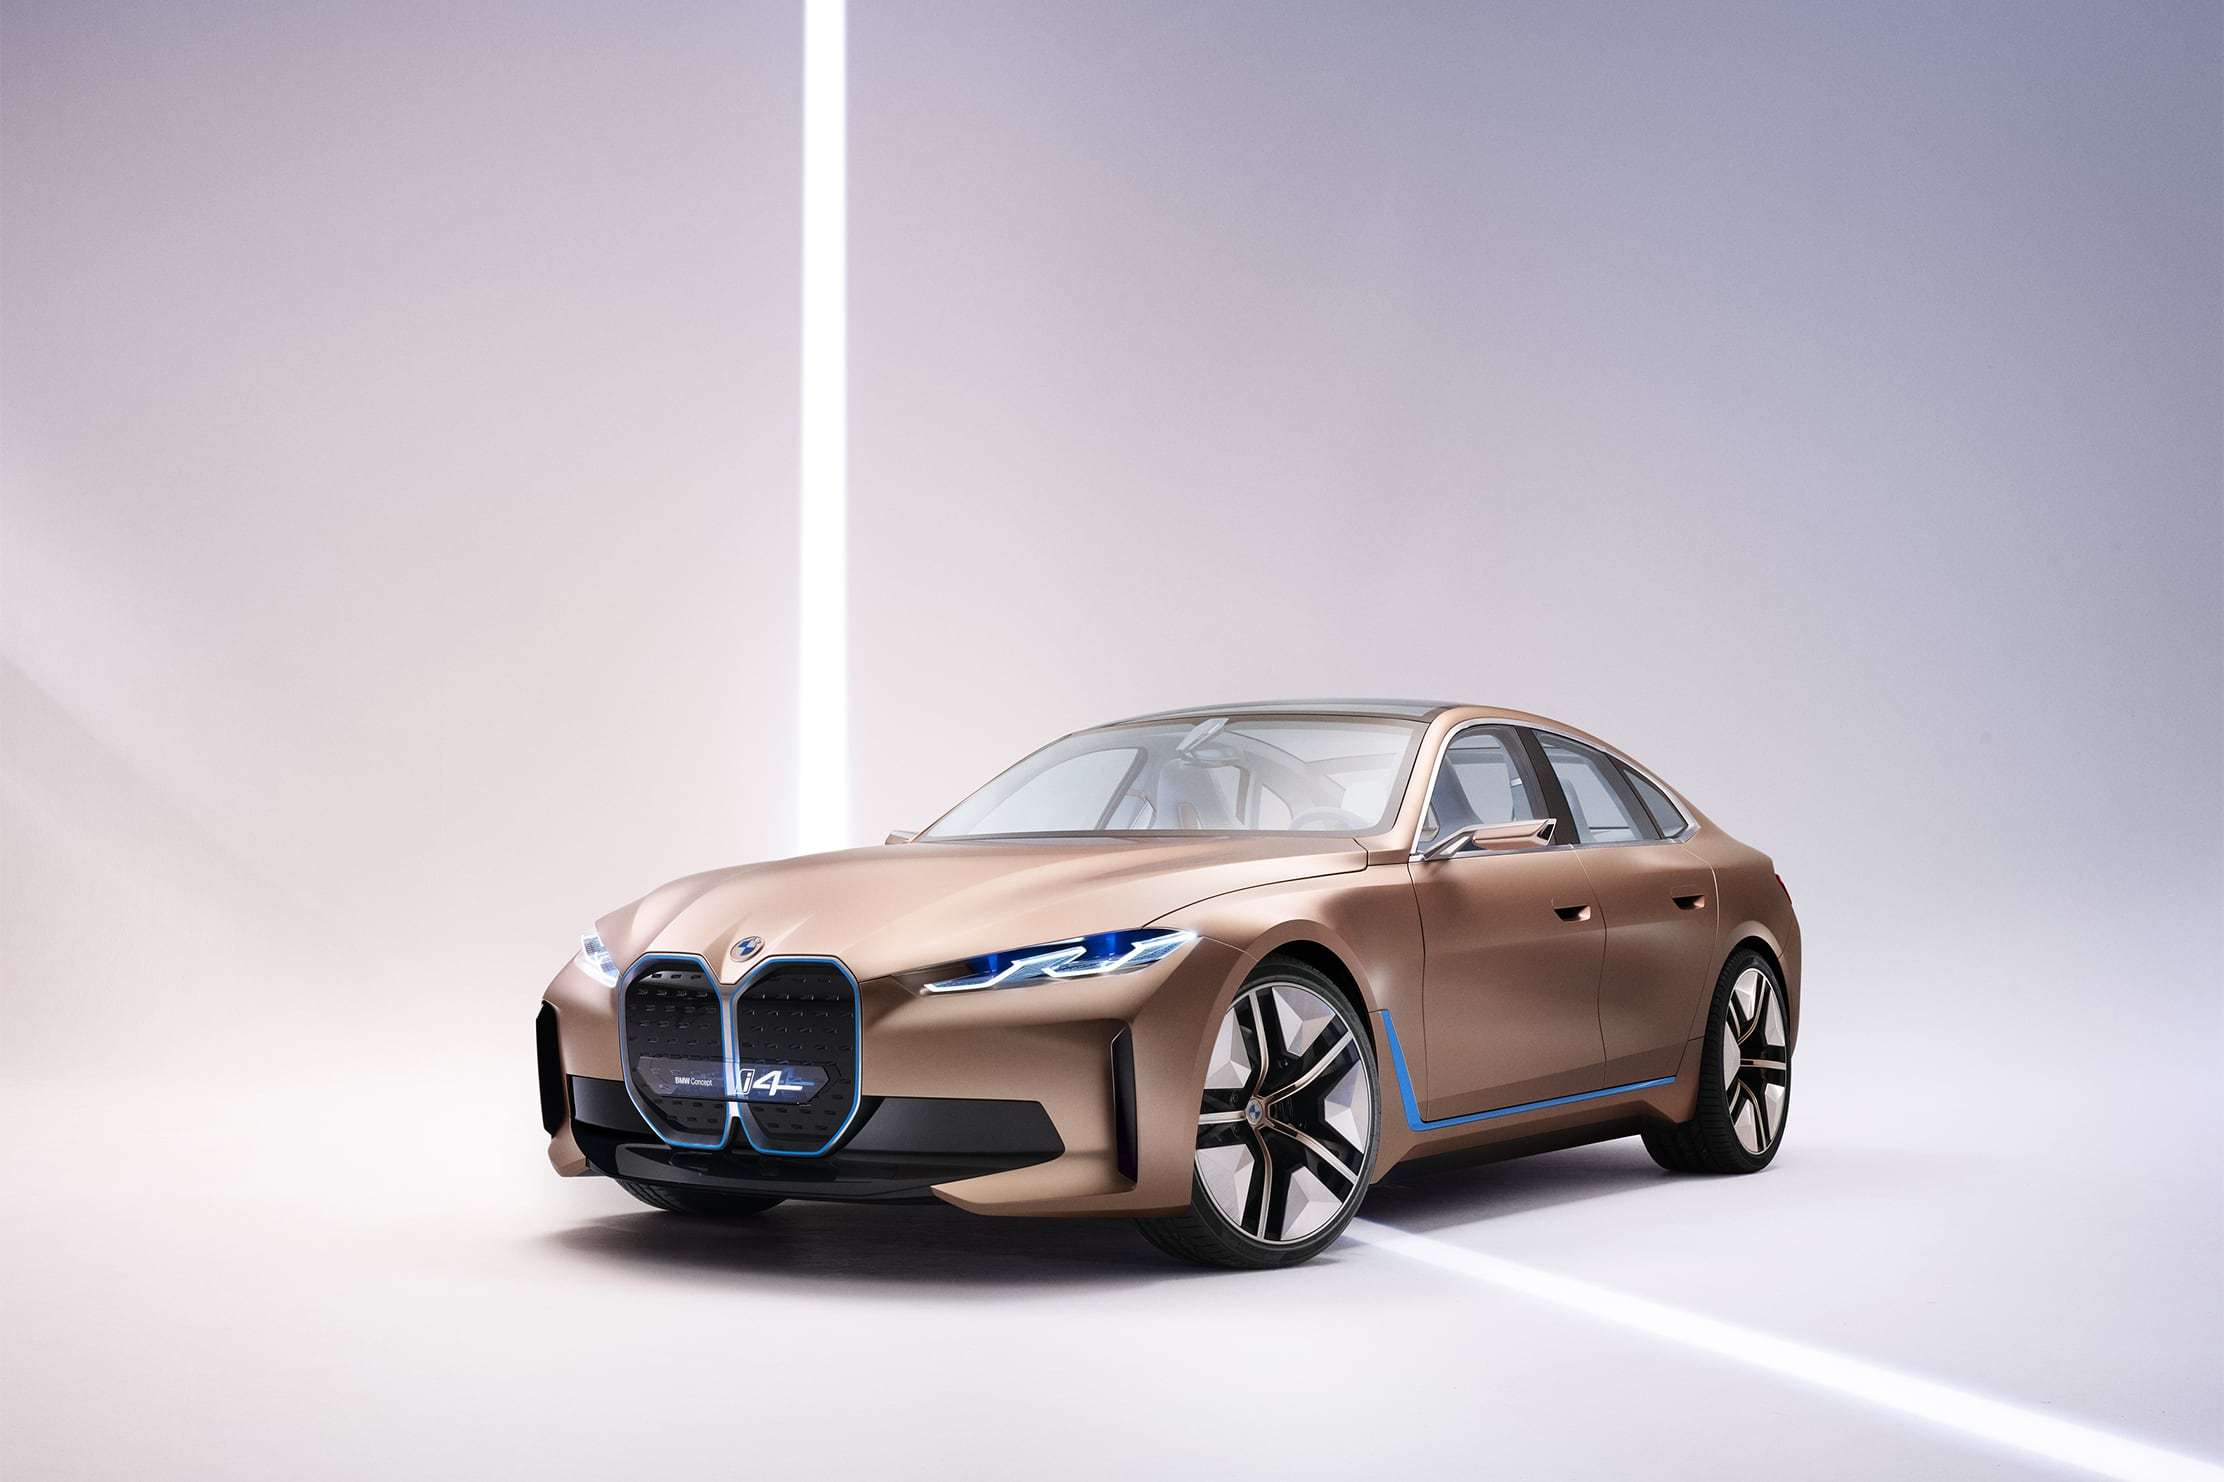 BMW reduce producţia din cauza deficitului de semiconductori